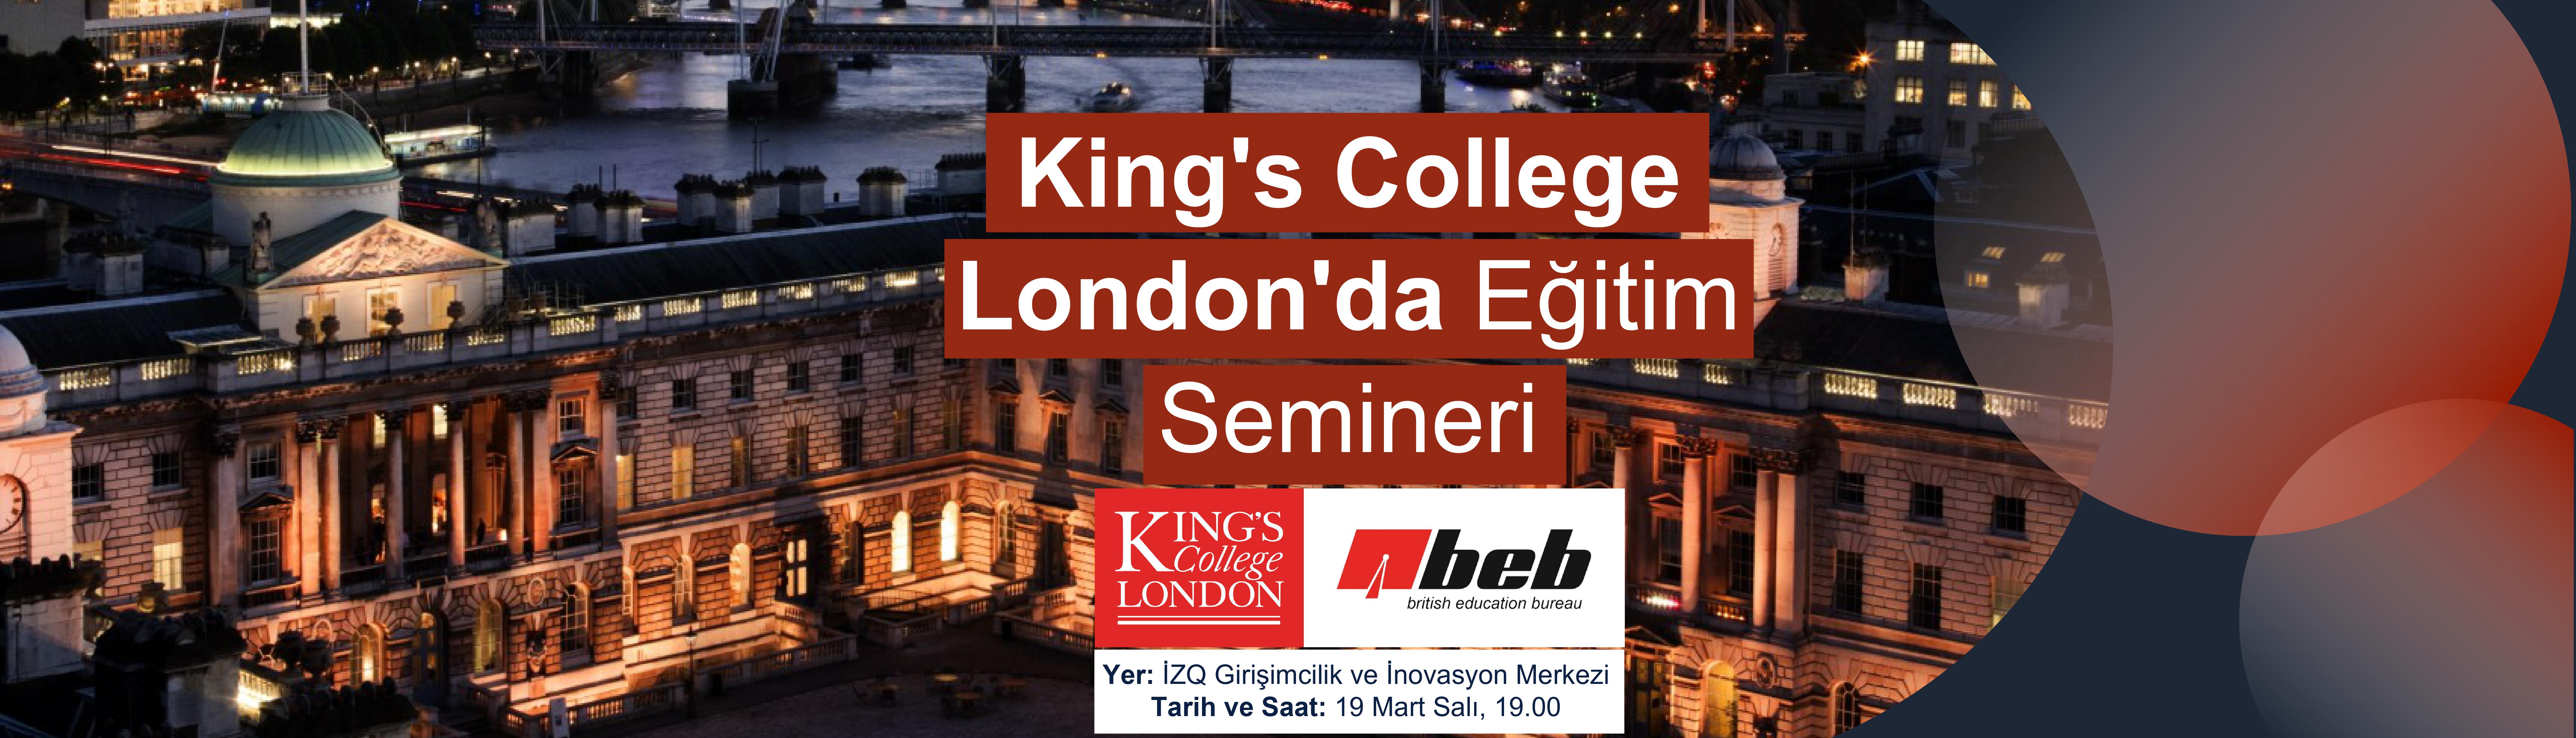 Kings-College-London-Izmir-Semineri-BEB